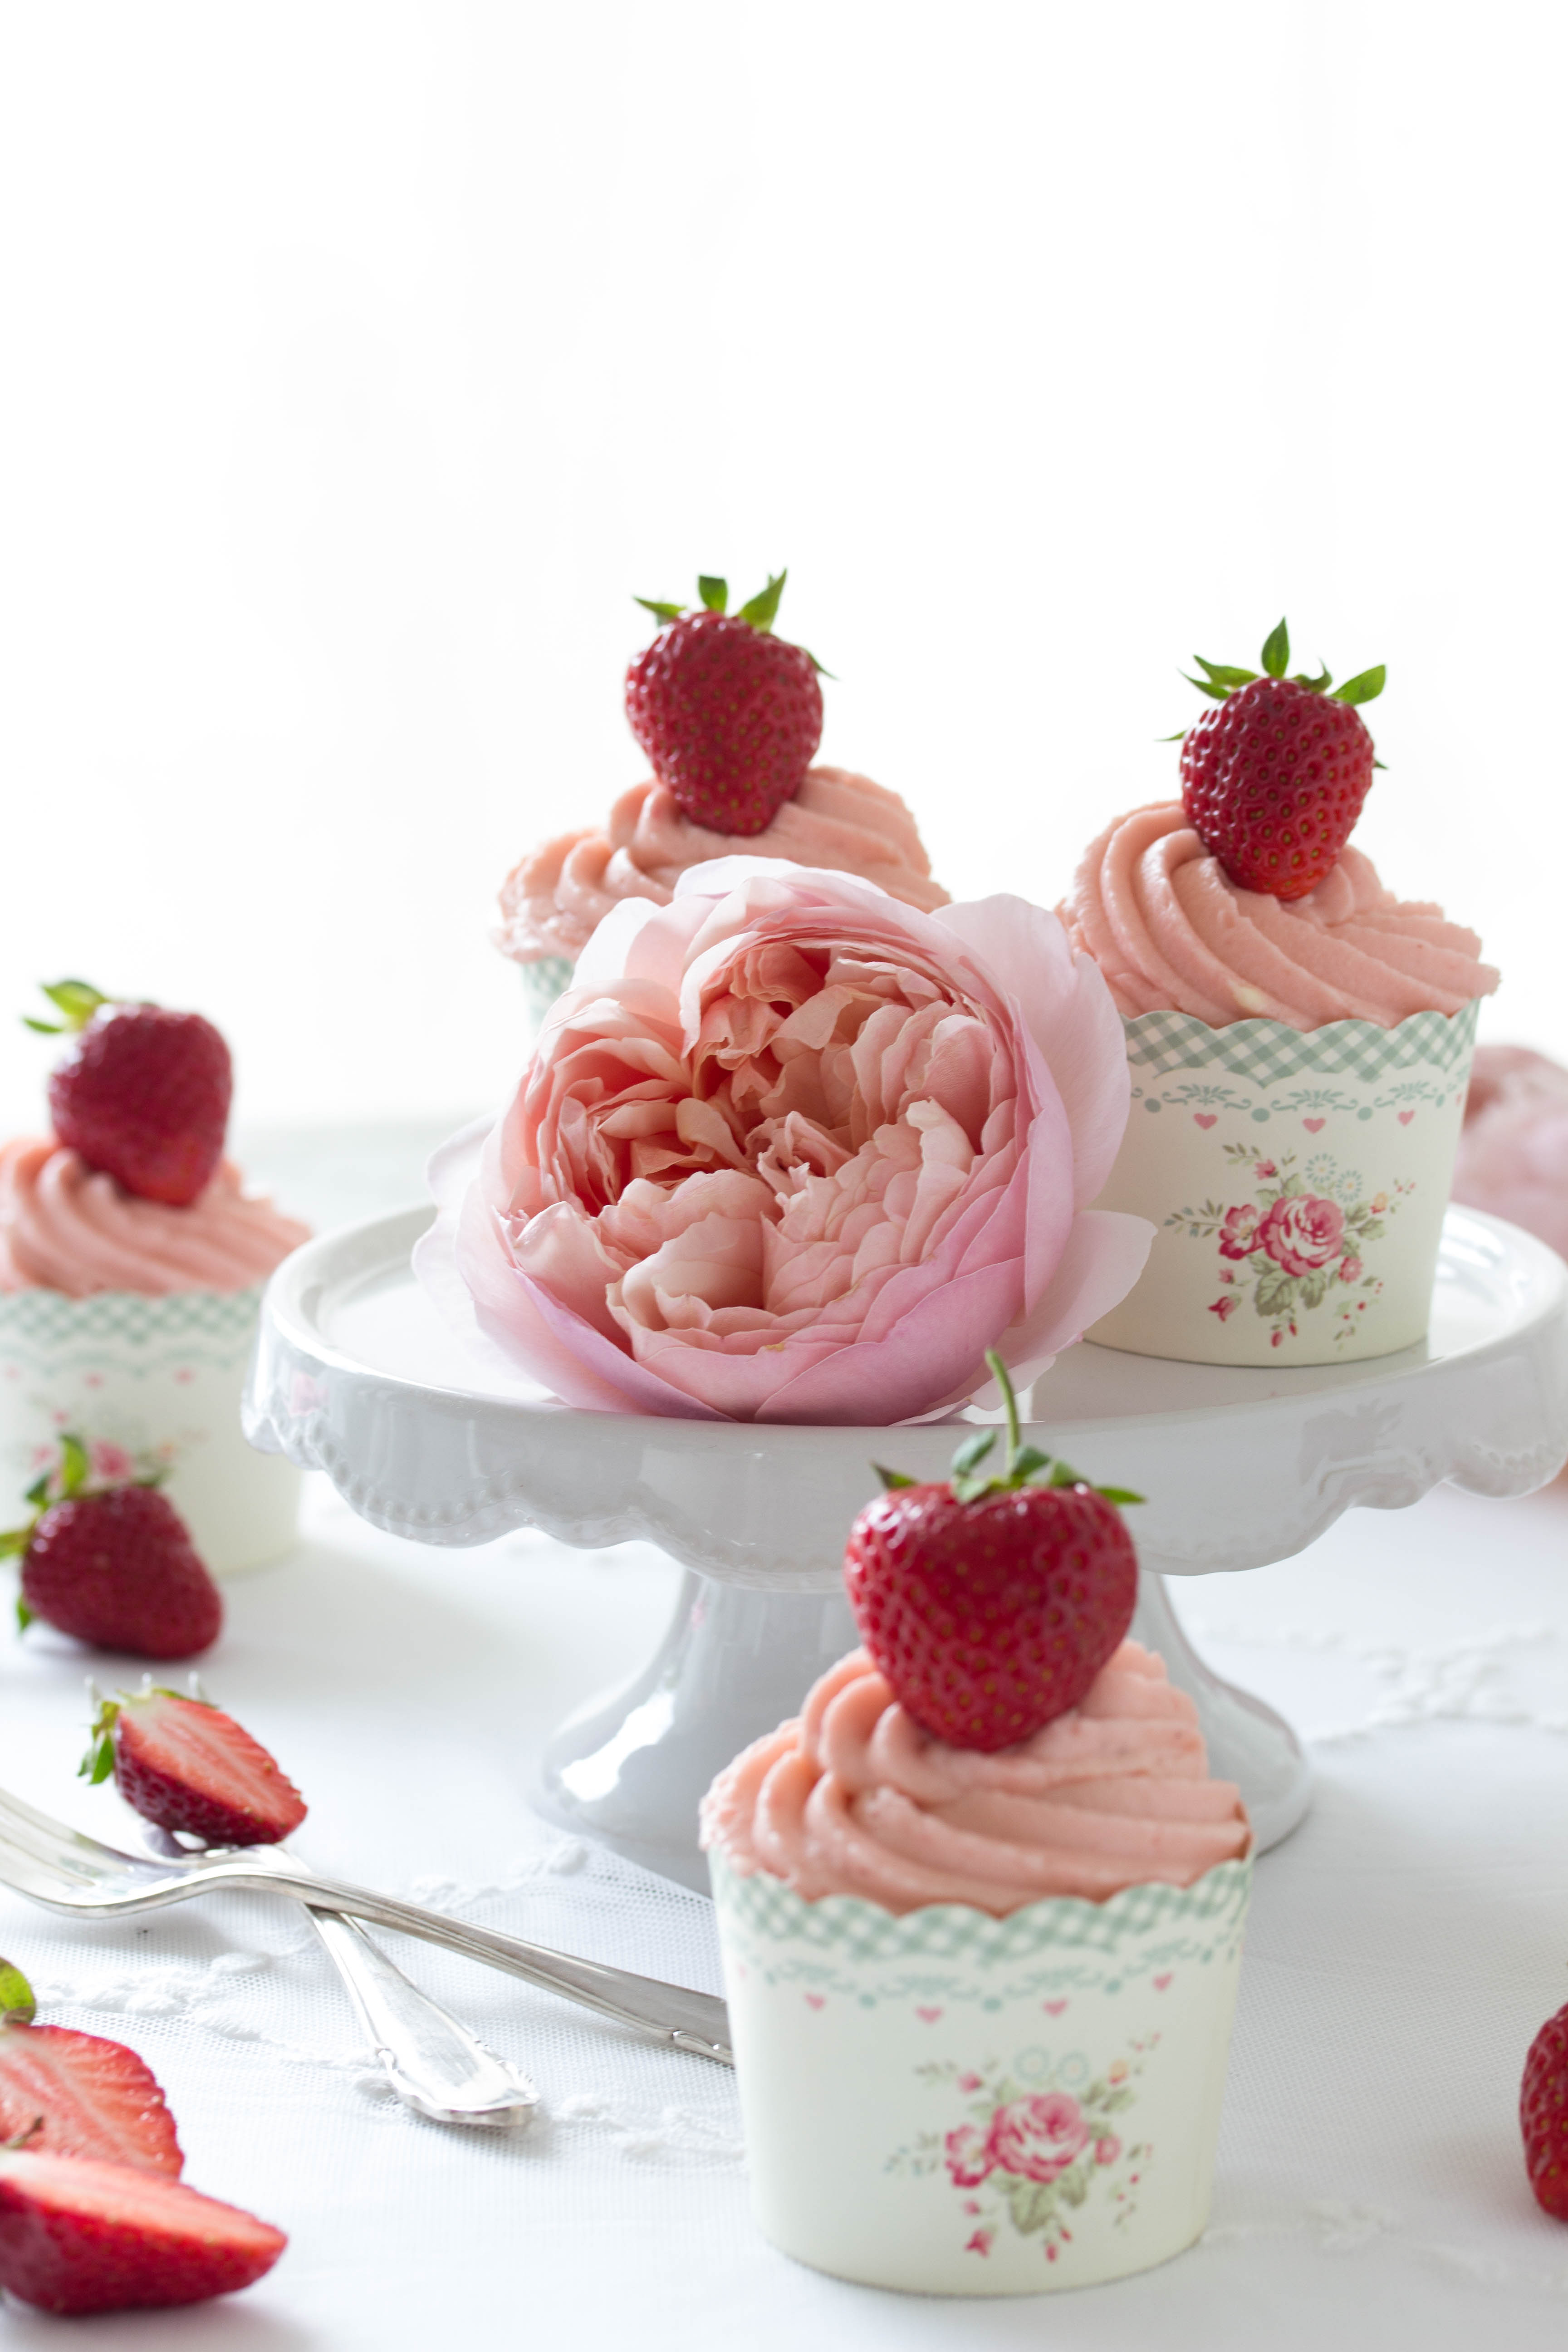 Erdbeer Joghurt Cucpakes